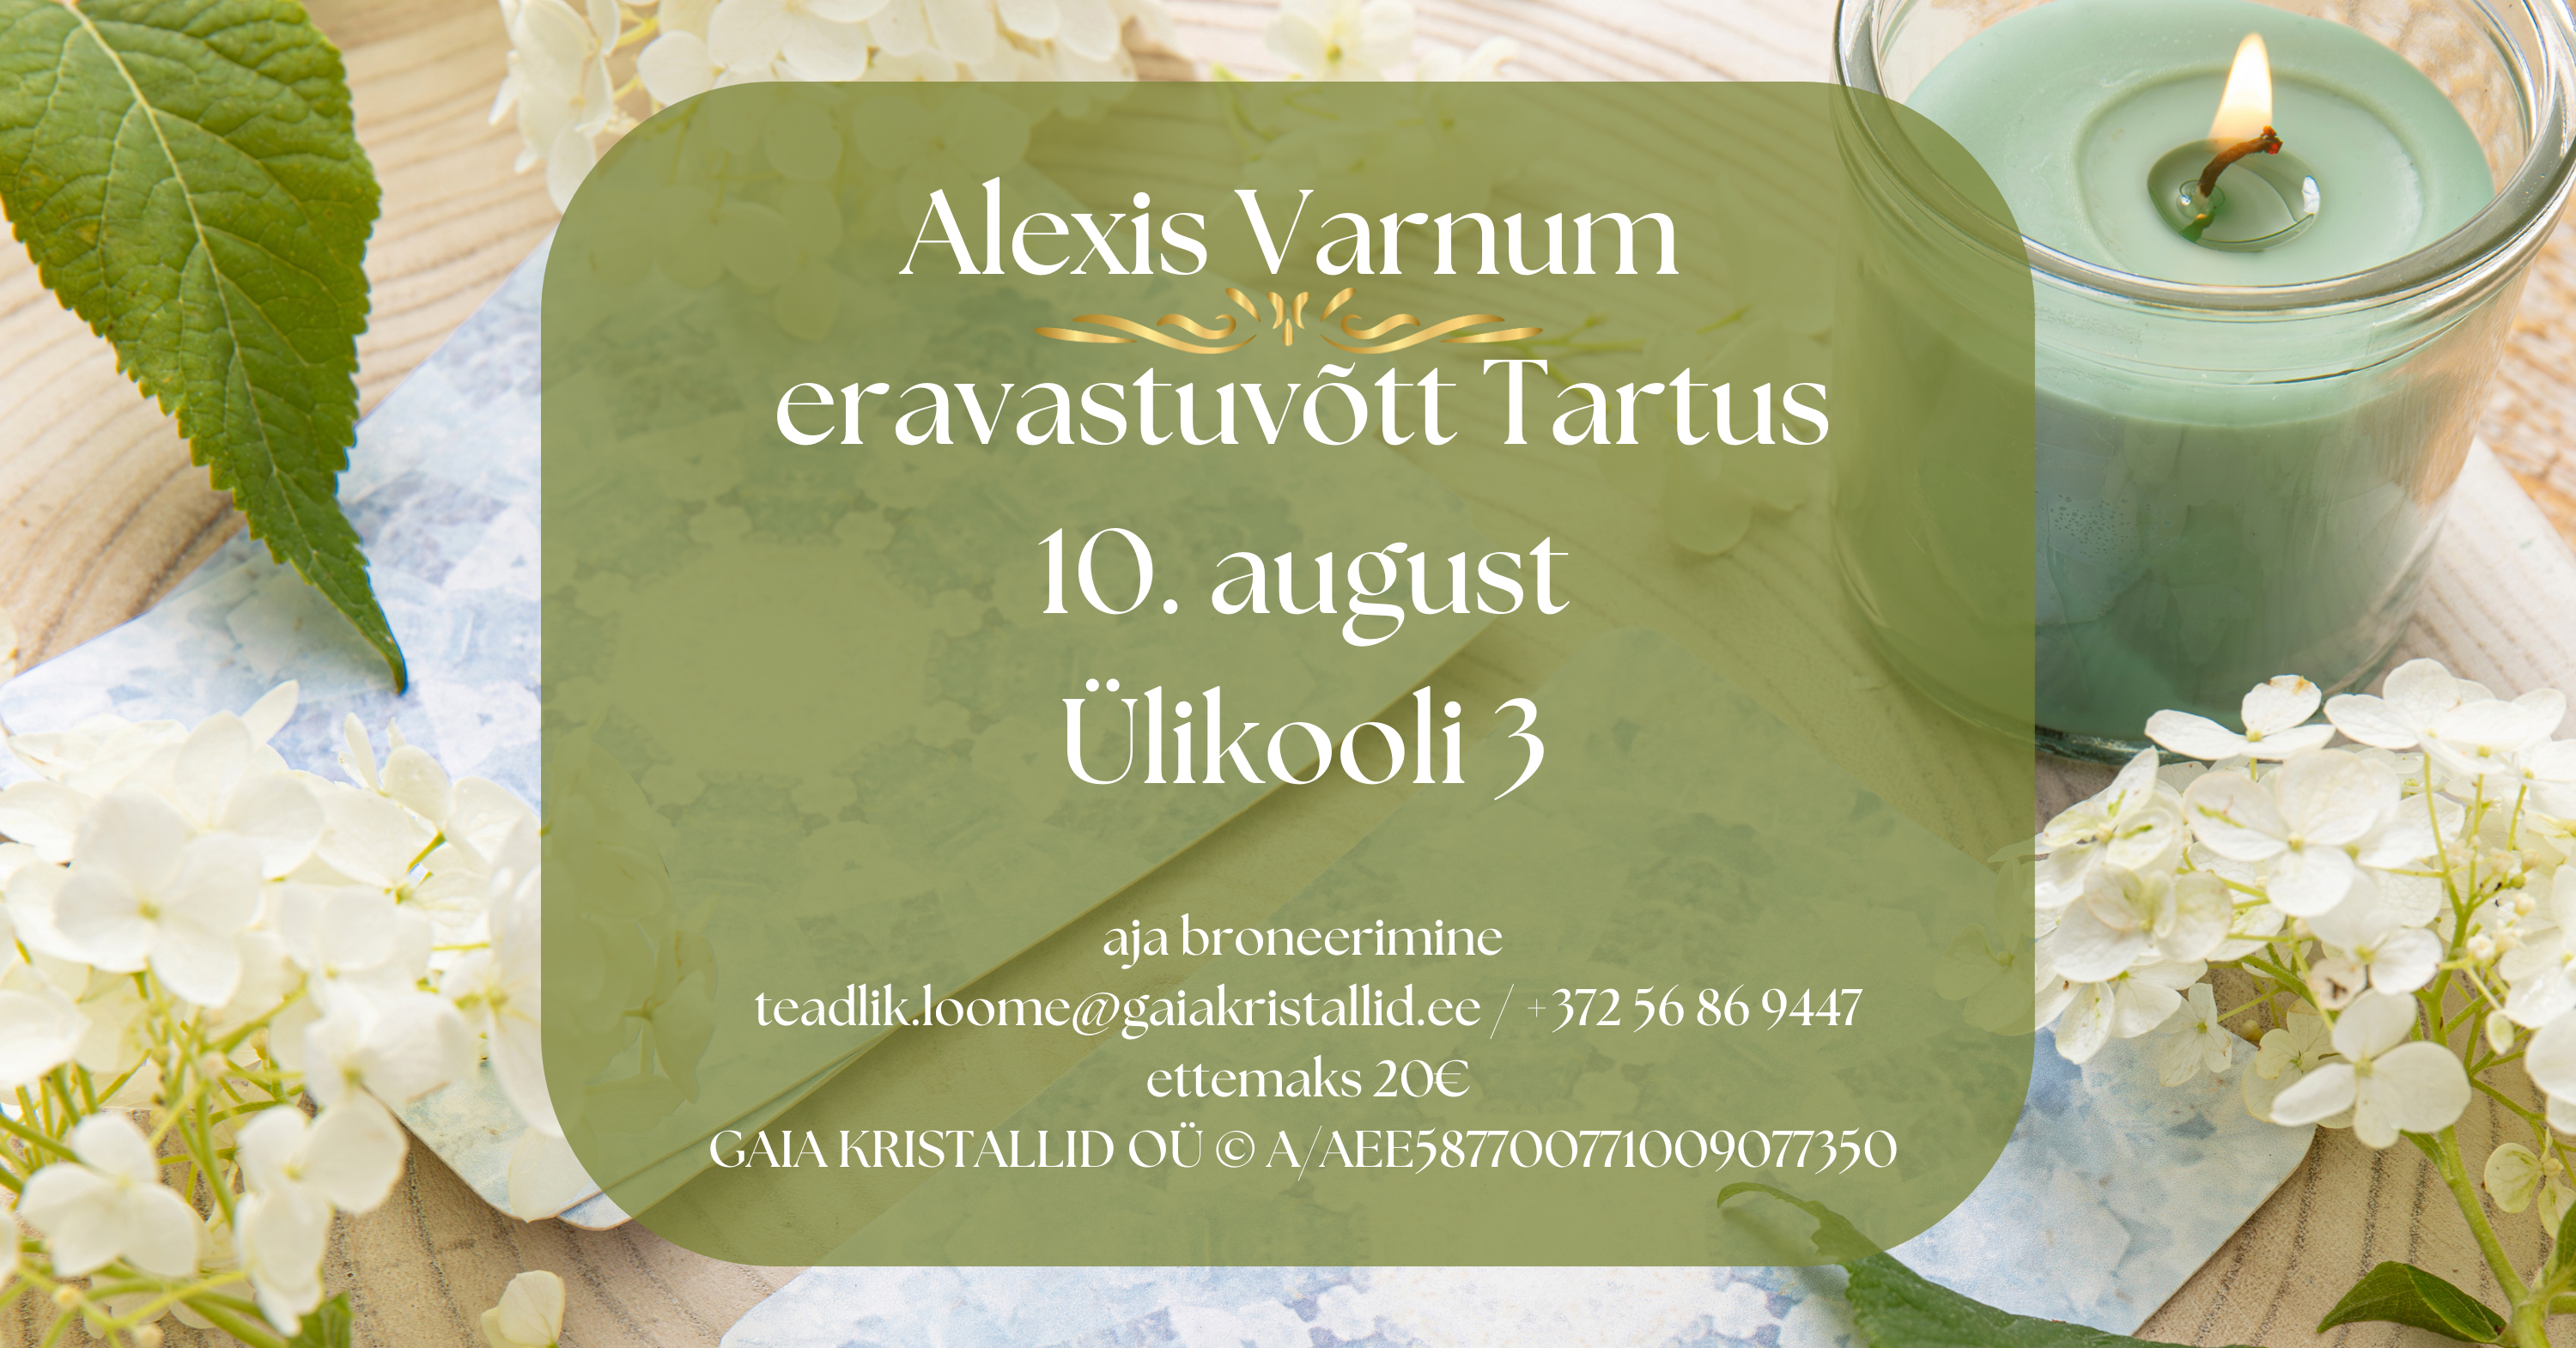 Alexis Varnum eravastuvõtt Tartus 10. august 1100 - 1200 1315 - 1415 1430 - 1530 1545 - 16_45 (13).png (7.82 MB)